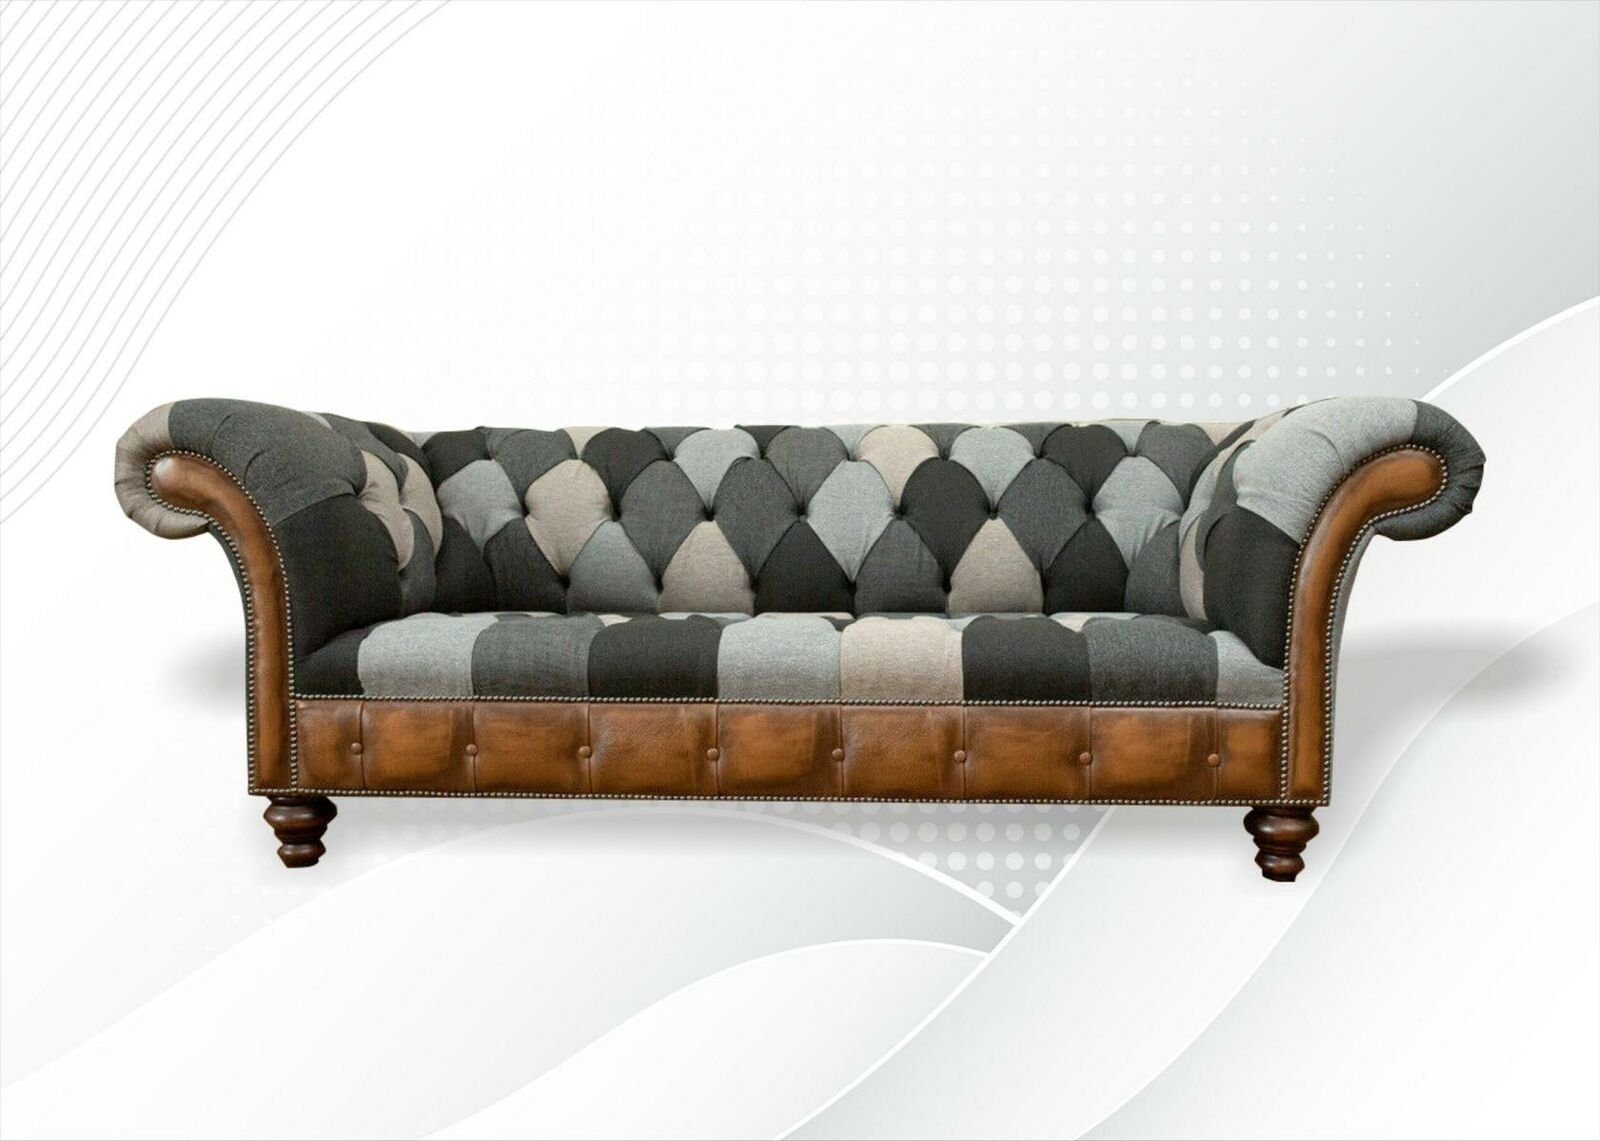 JVmoebel Chesterfield-Sofa, Chesterfield Mehrfarbig Dreisitzer Design Couchen Polster Sofa Sofas Neu Textil